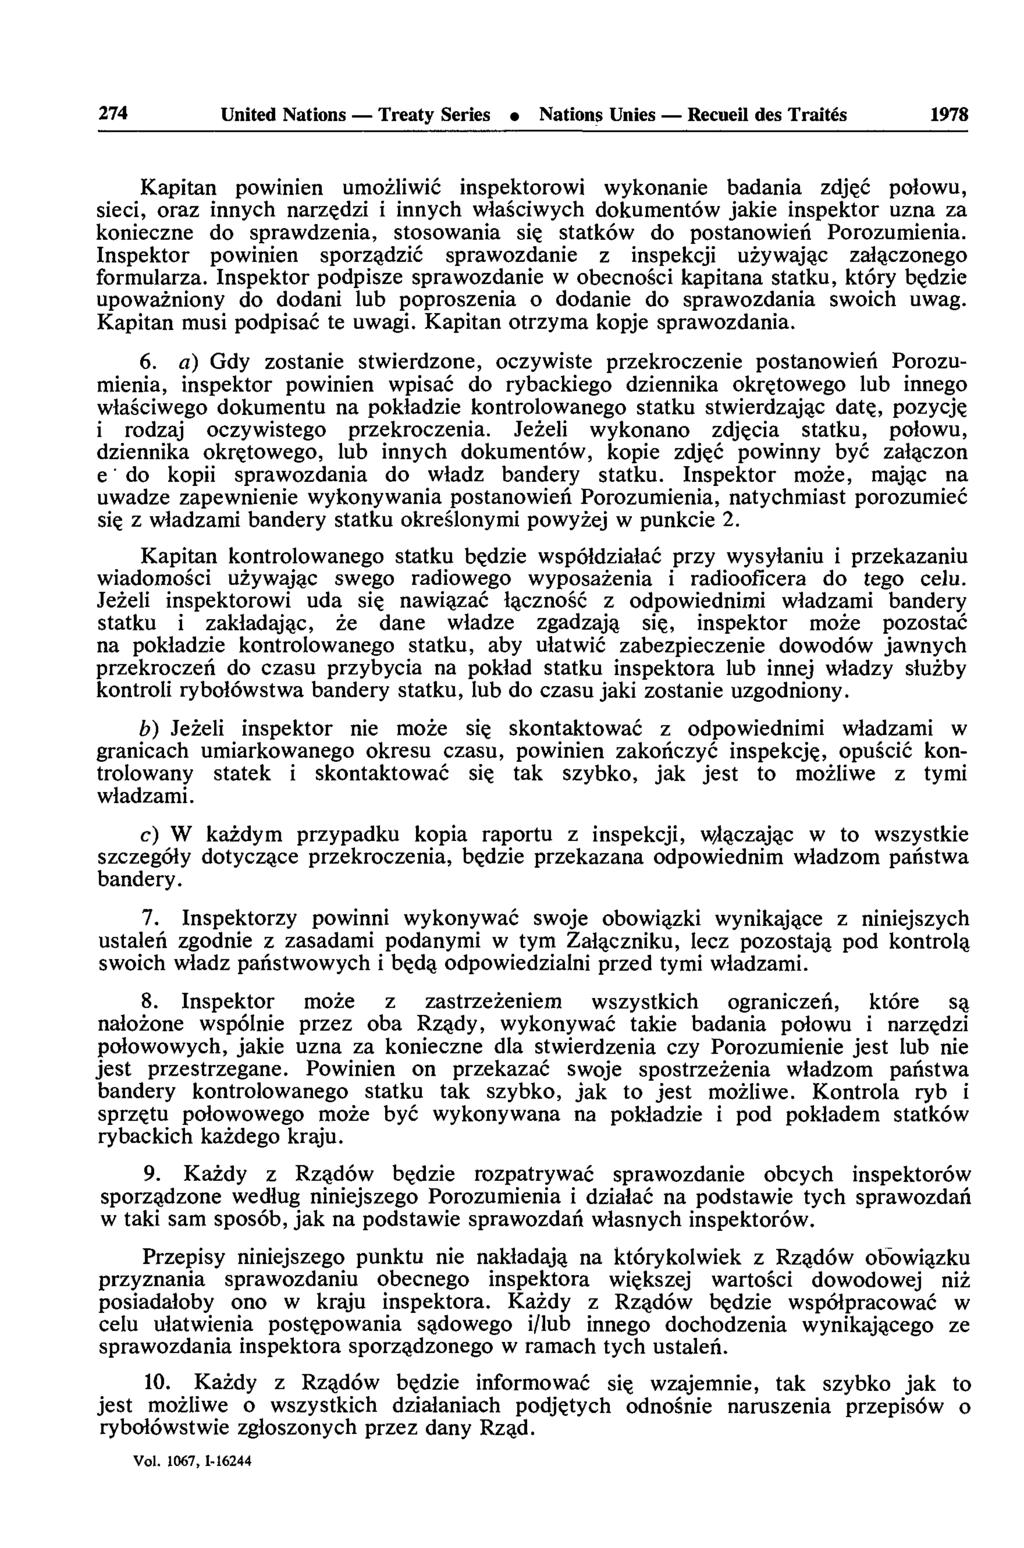 274 United Nations Treaty Series Nations Unies Recueil des Traités 1978 Kapitan powinien umozliwic inspektorowi wykonanie badania zdjçc polowu, sieci, oraz innych narzçdzi i innych wlasciwych